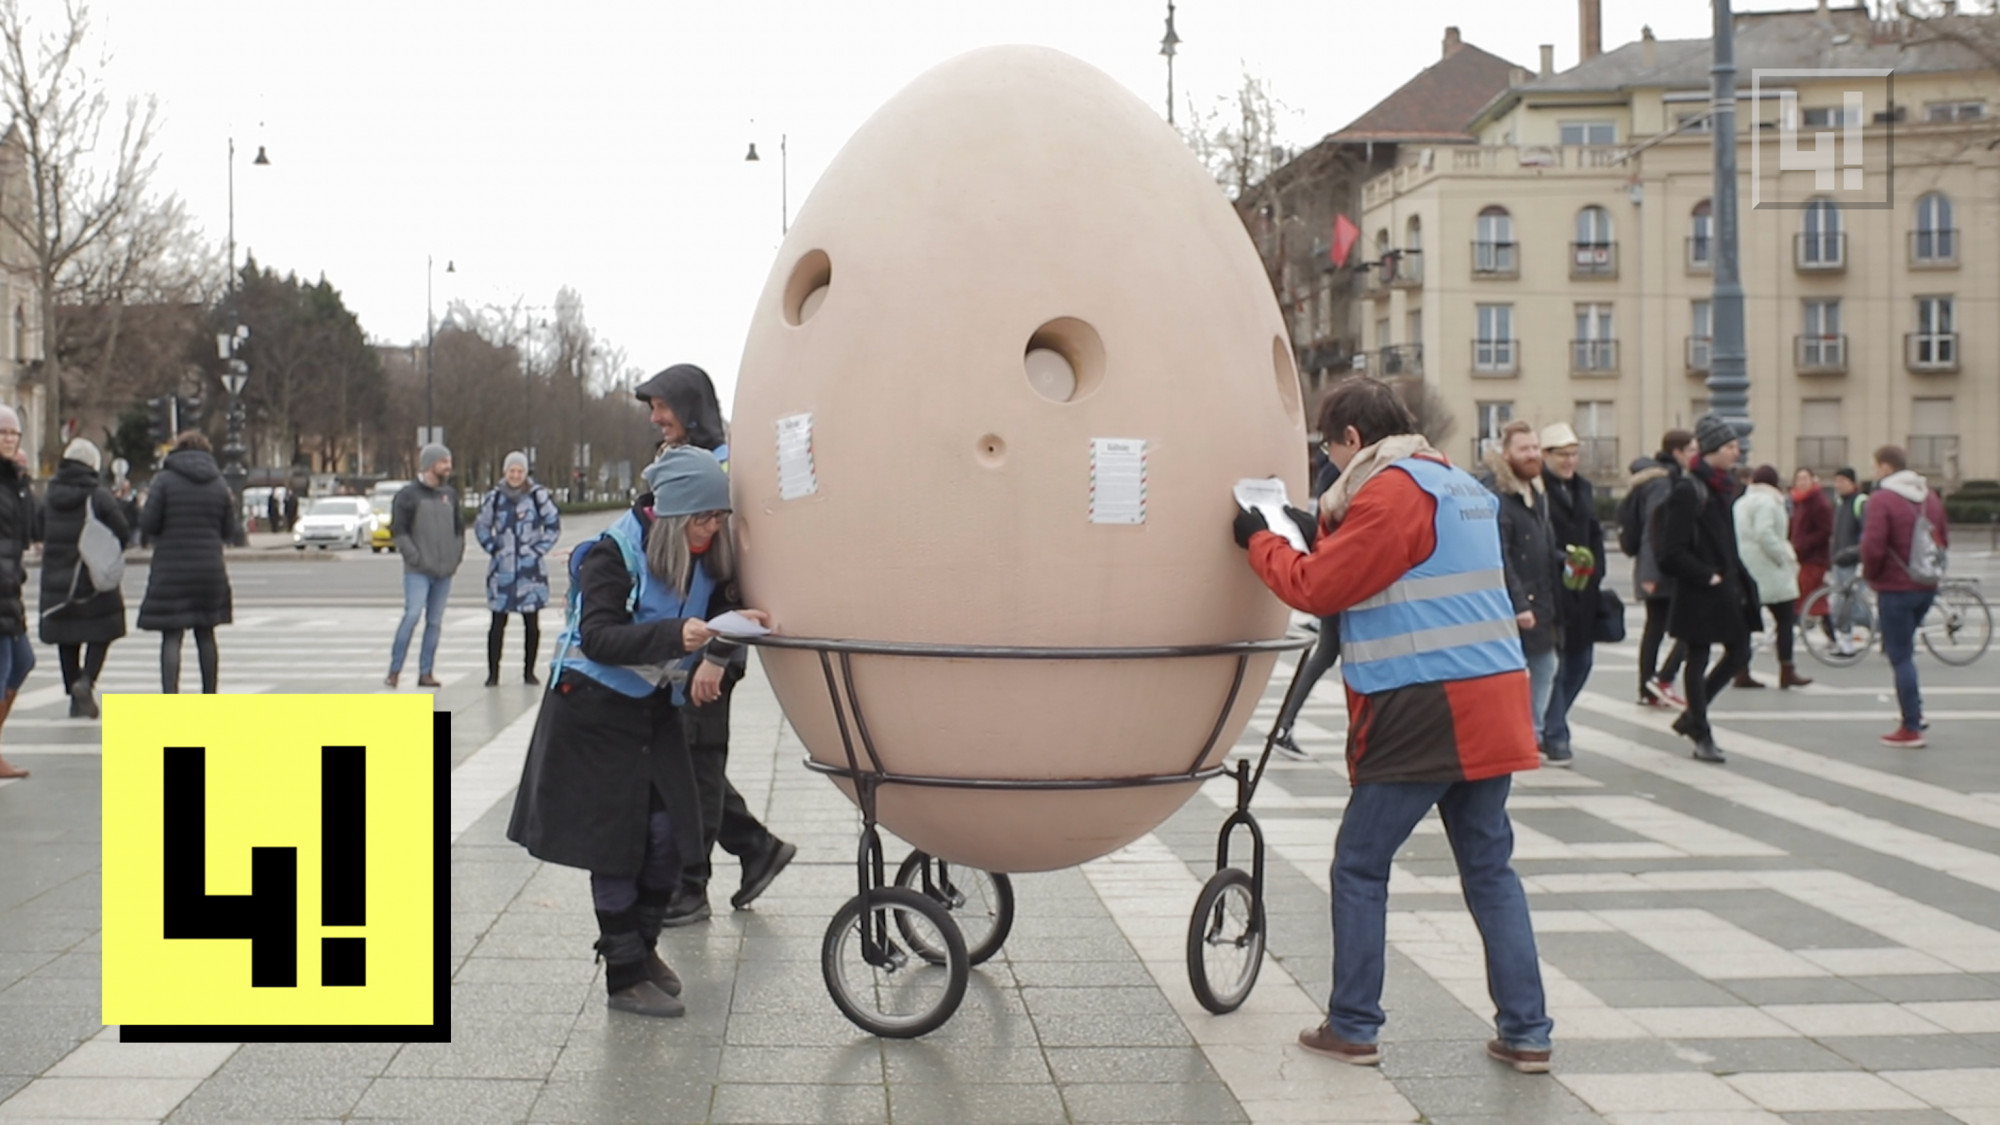 Mélyen sebzett a társadalom, egy hatalmas tojásba kiabáltak a tüntetők a Szabadságmeneten